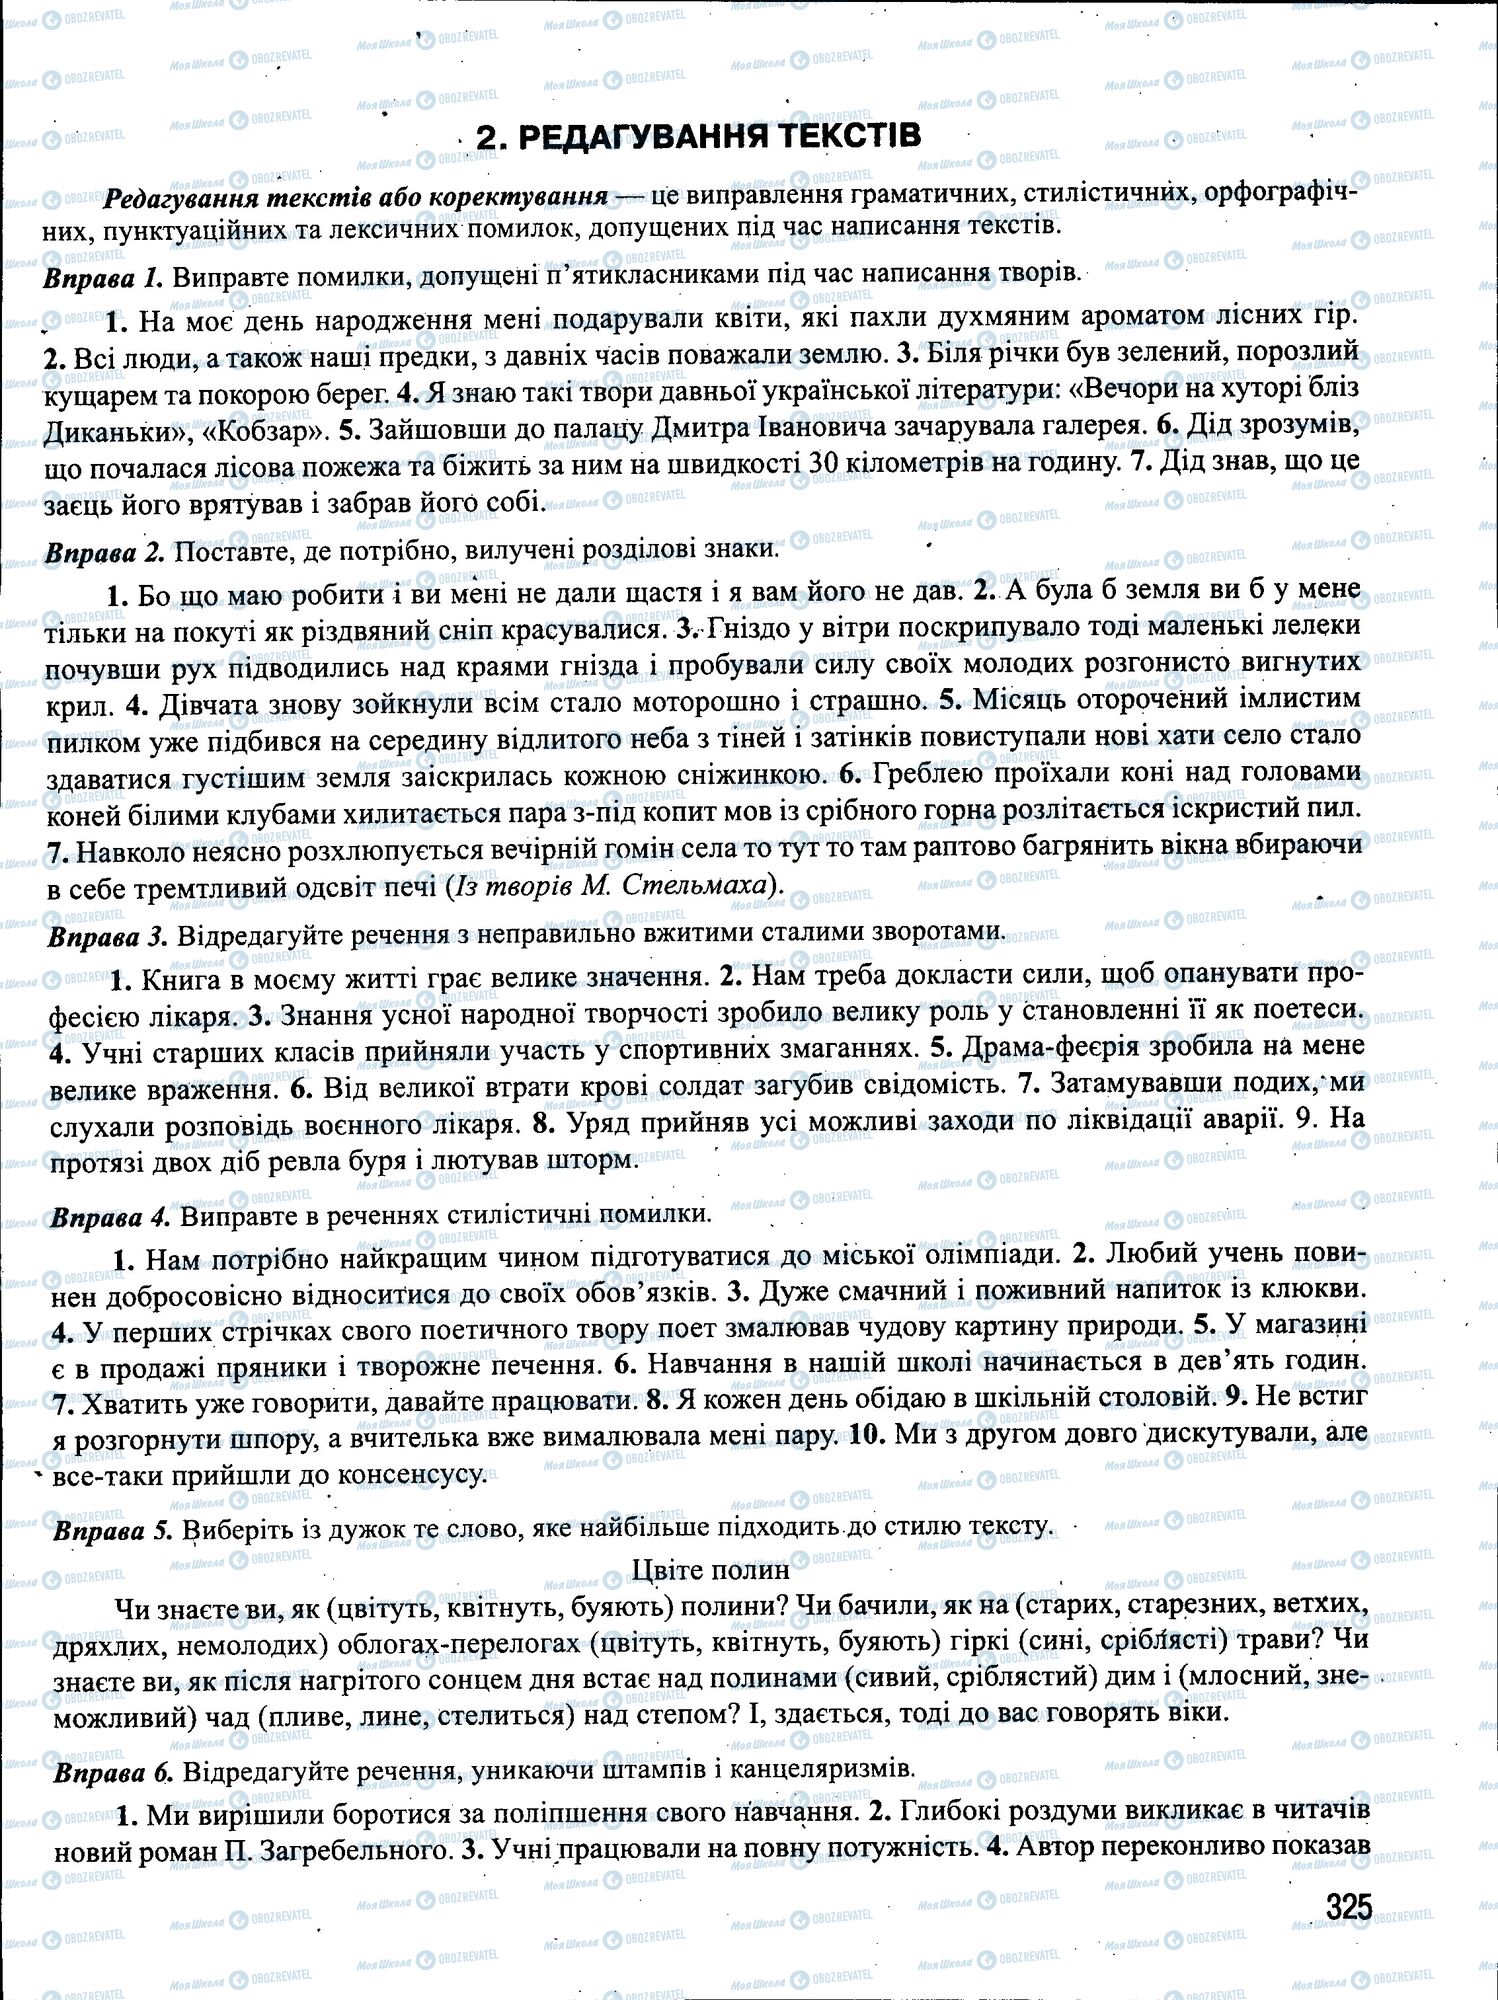 ЗНО Укр мова 11 класс страница 325